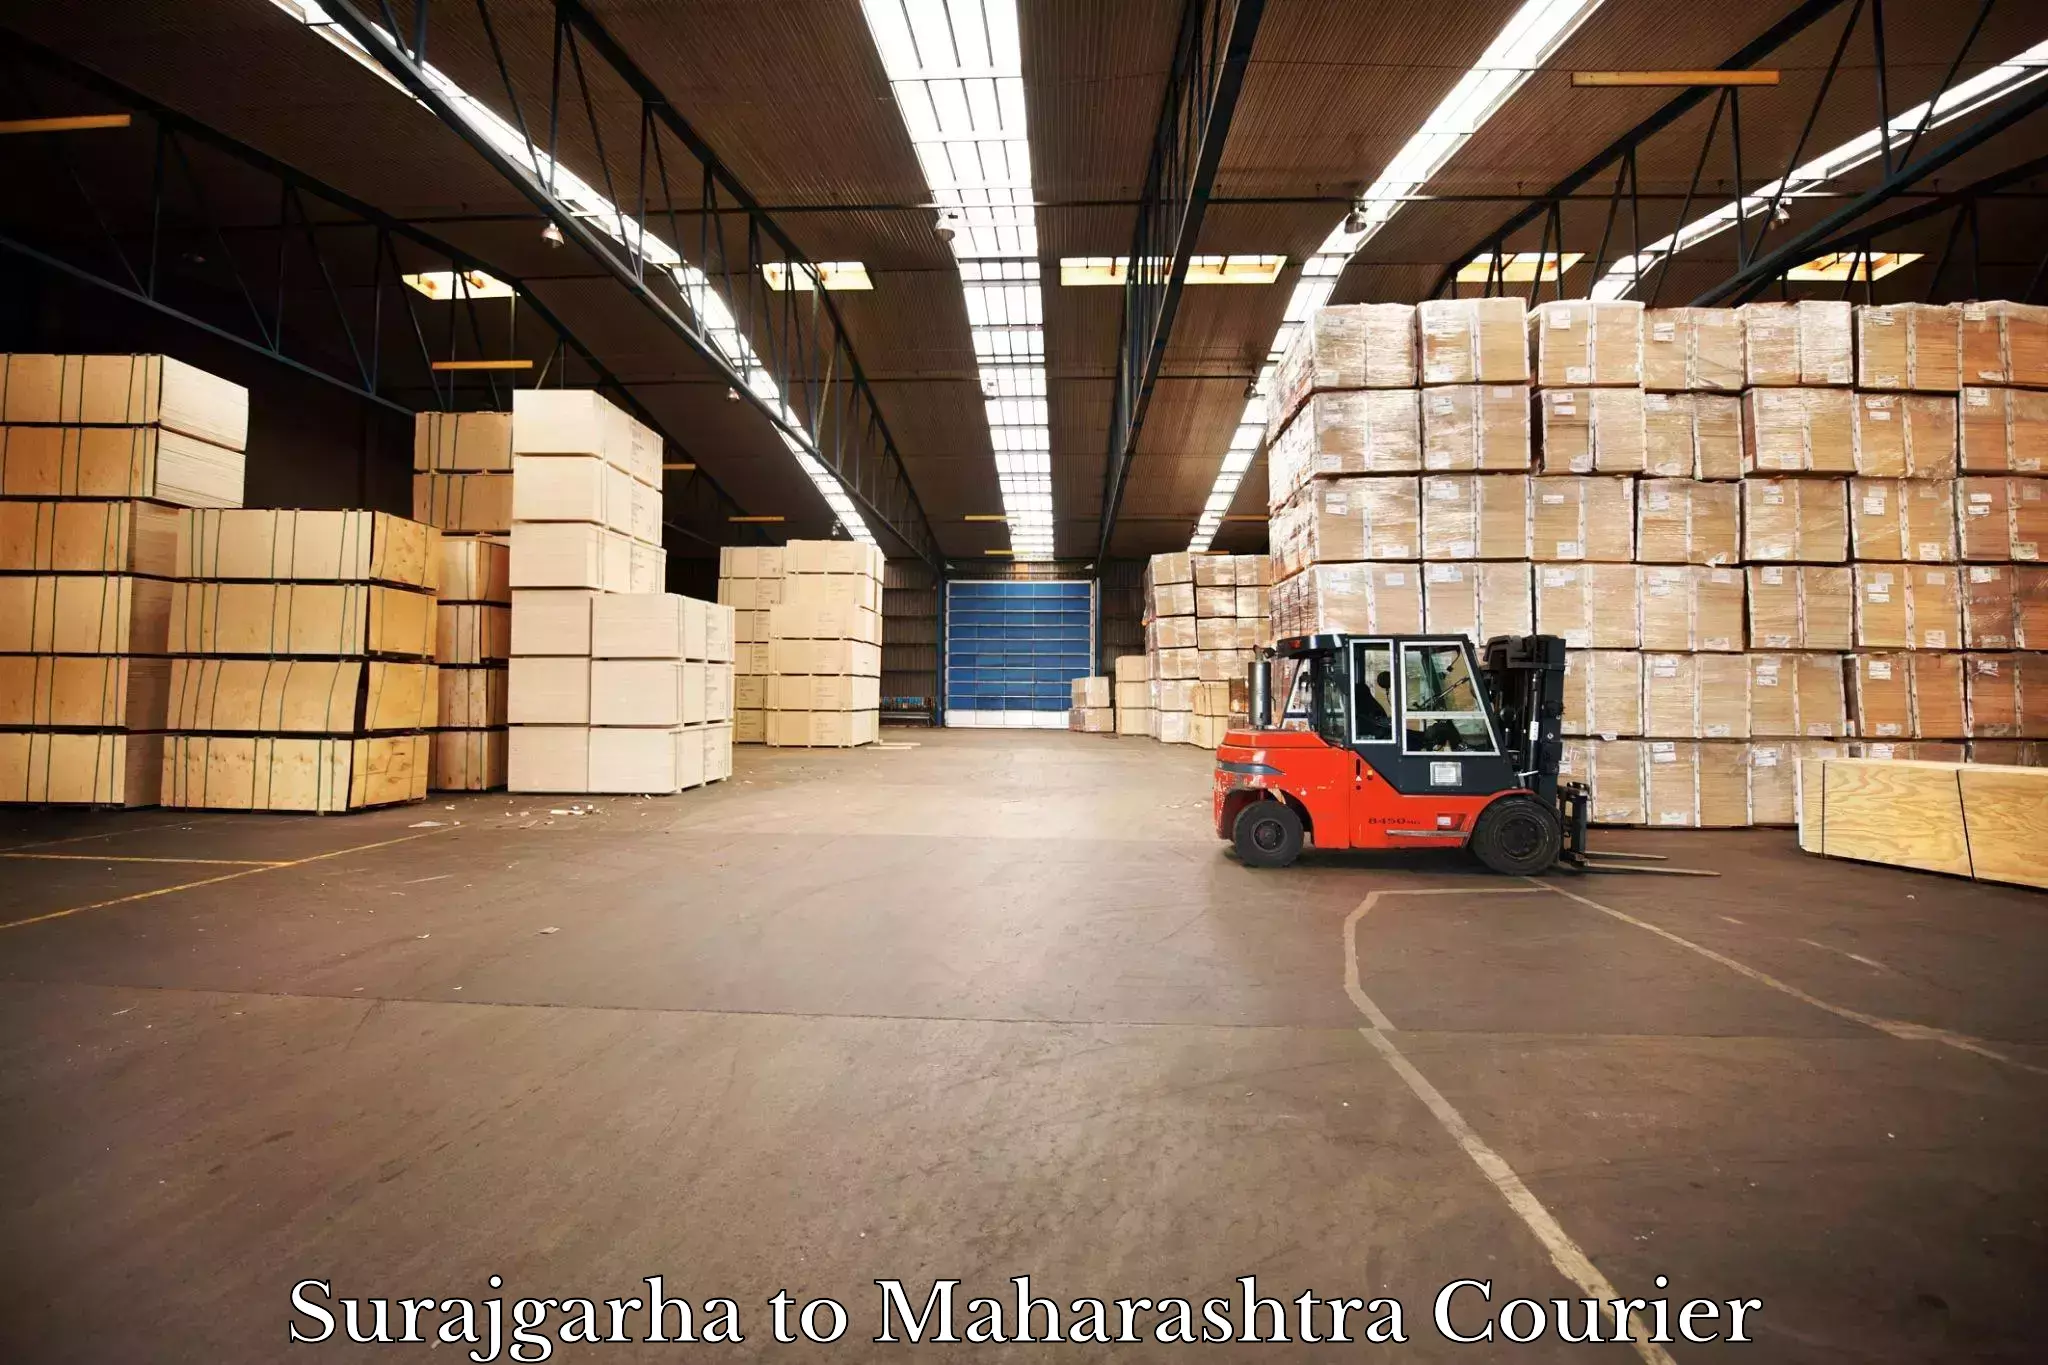 International parcel service Surajgarha to Vaijapur